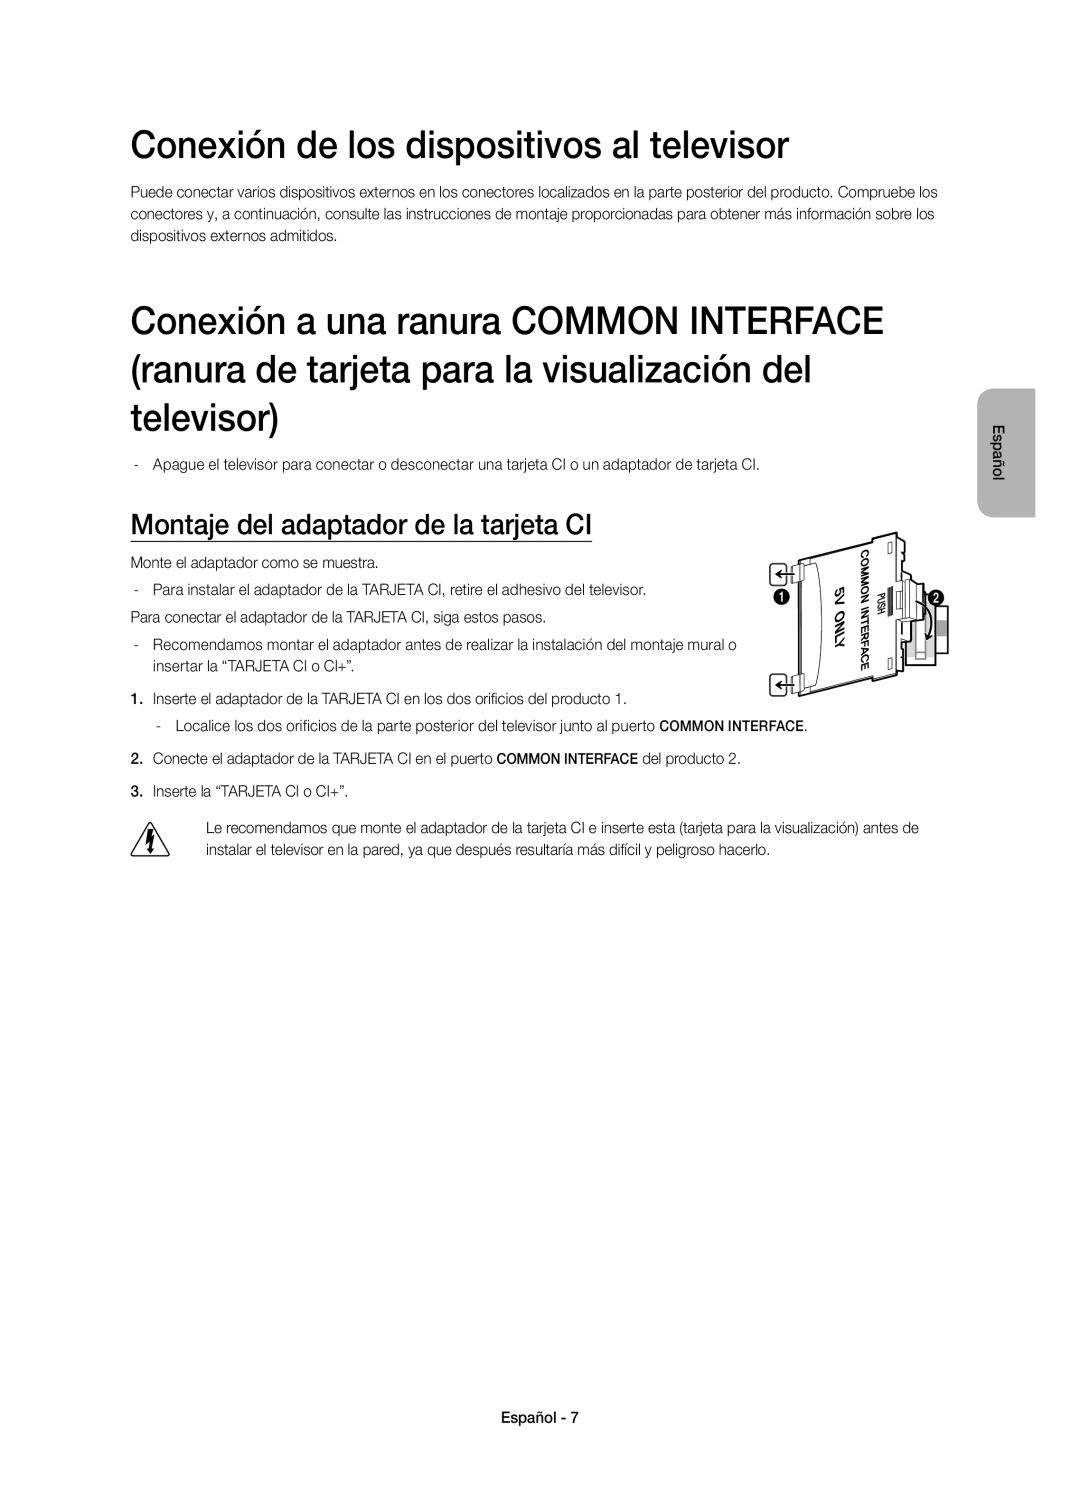 Samsung UE48H6410SSXXC, UE40H6410SSXXC Conexión de los dispositivos al televisor, Montaje del adaptador de la tarjeta CI 